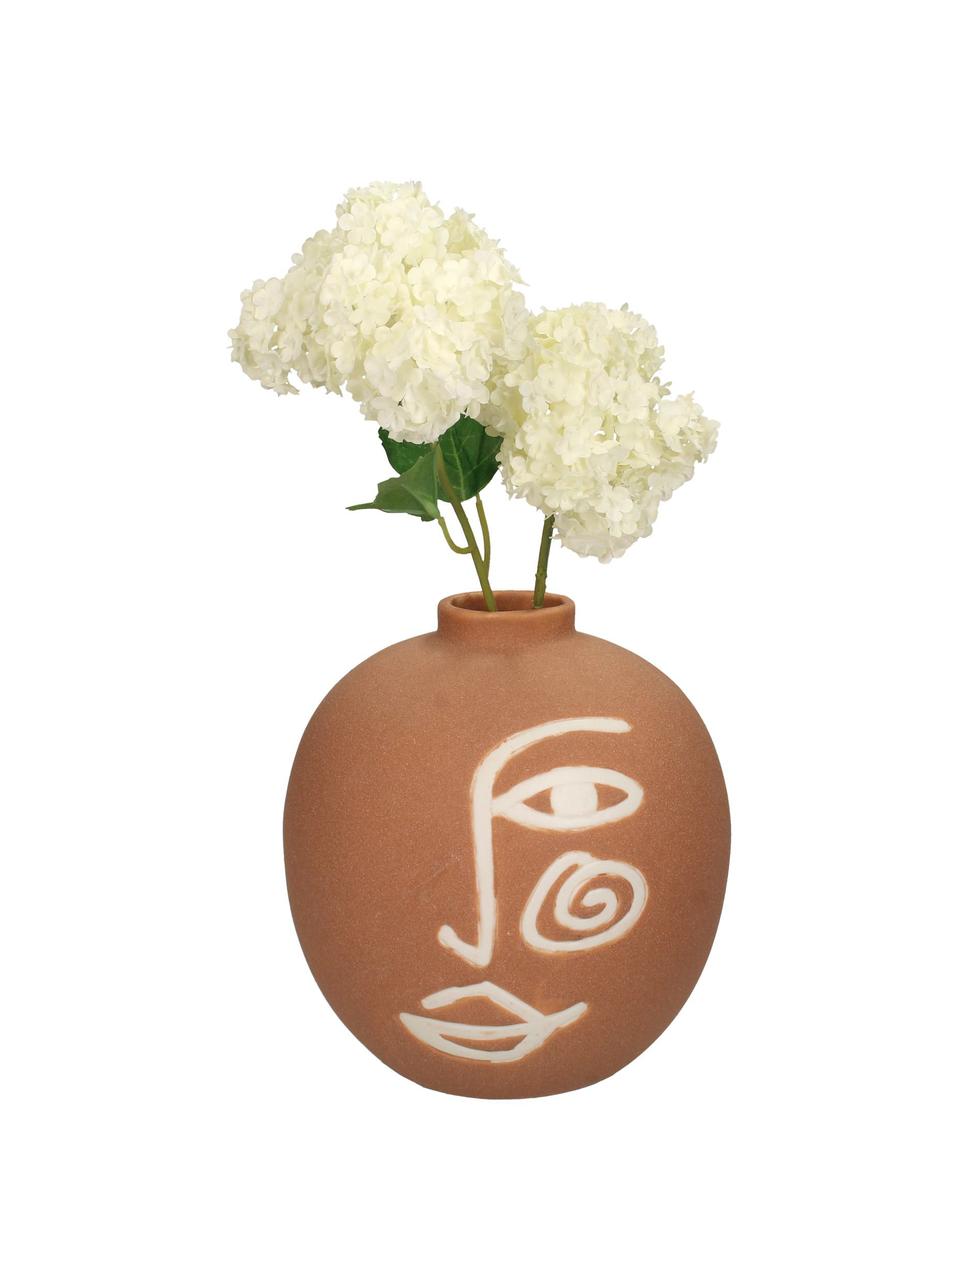 Kameninová váza Blink, Kamenina, Oranžová, bílá, Ø 16 cm, V 16 cm